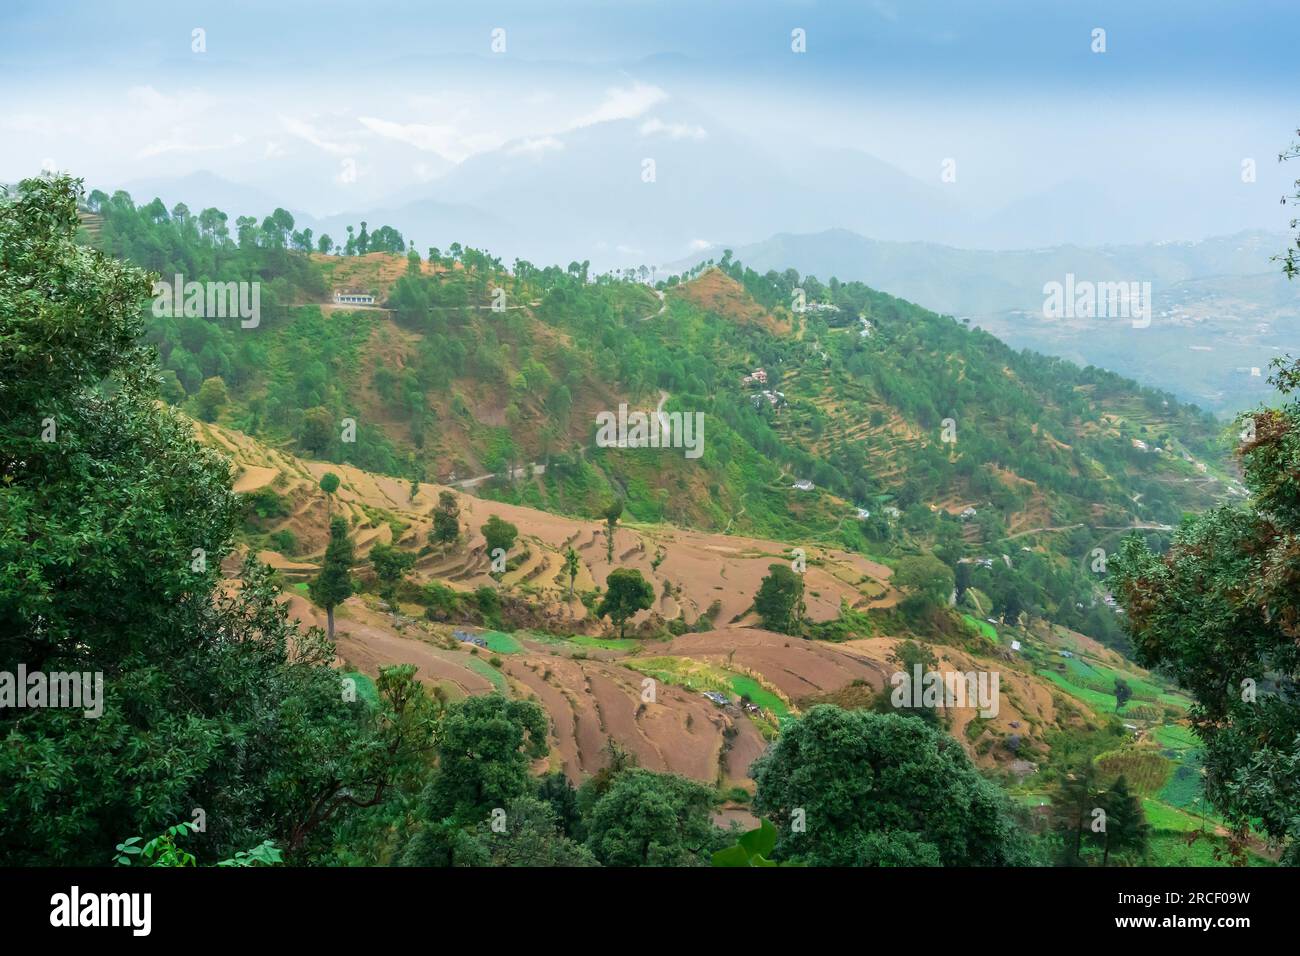 Stufenlandwirtschaft oder Terrassenlandwirtschaft. Steile Hügel oder Berghänge werden so geschnitten, dass sie ebenerdige Flächen für das Anpflanzen von Pflanzen bilden. Neblig, neblig Himalaya Indien Stockfoto